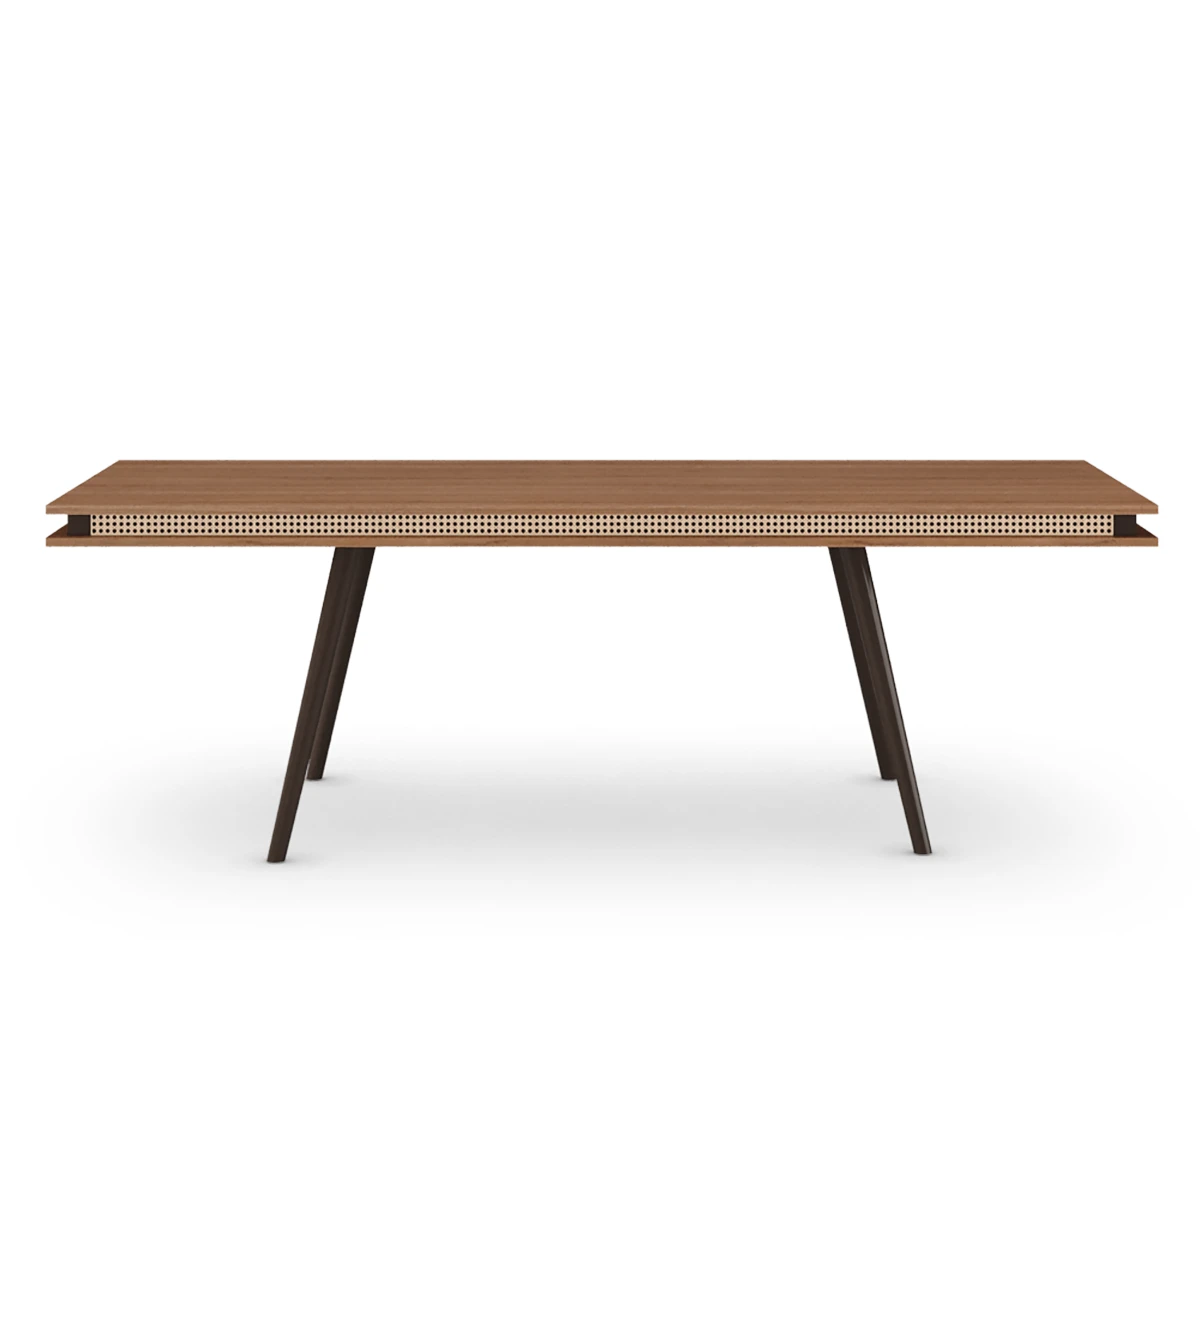 Mesa de comedor rectangular Malmo 240 x 100 cm, tapa en nogal, pies lacados marrón oscuro.